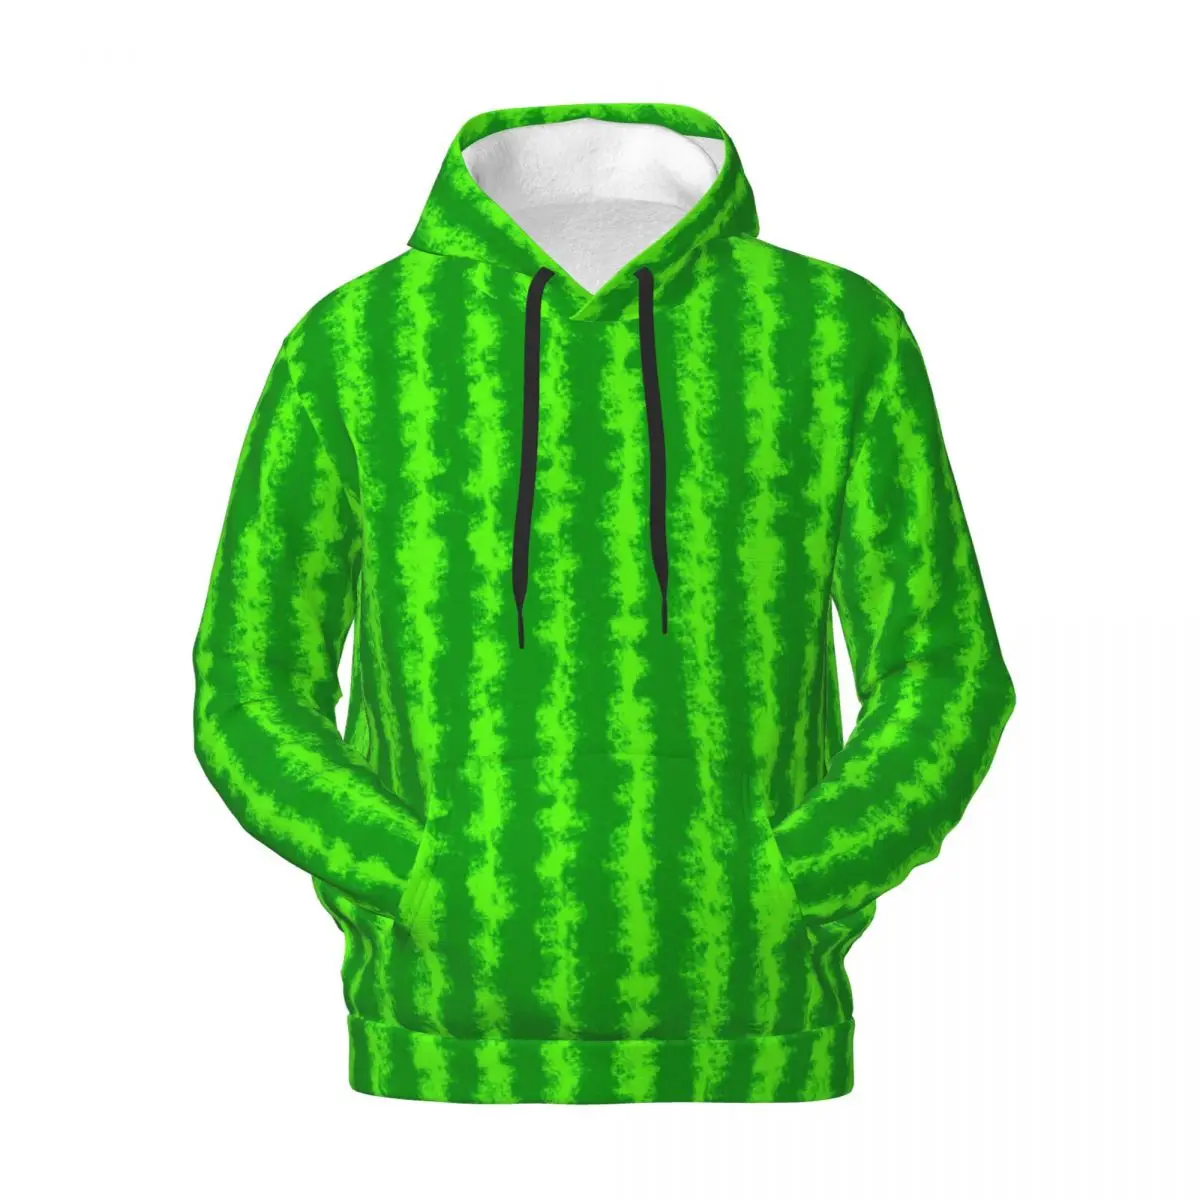 

Уличная одежда в зеленую полоску, толстовки, зимняя верхняя одежда с принтом арбуза, свитшоты, Мужской пуловер оверсайз с графическим принтом в стиле хип-хоп